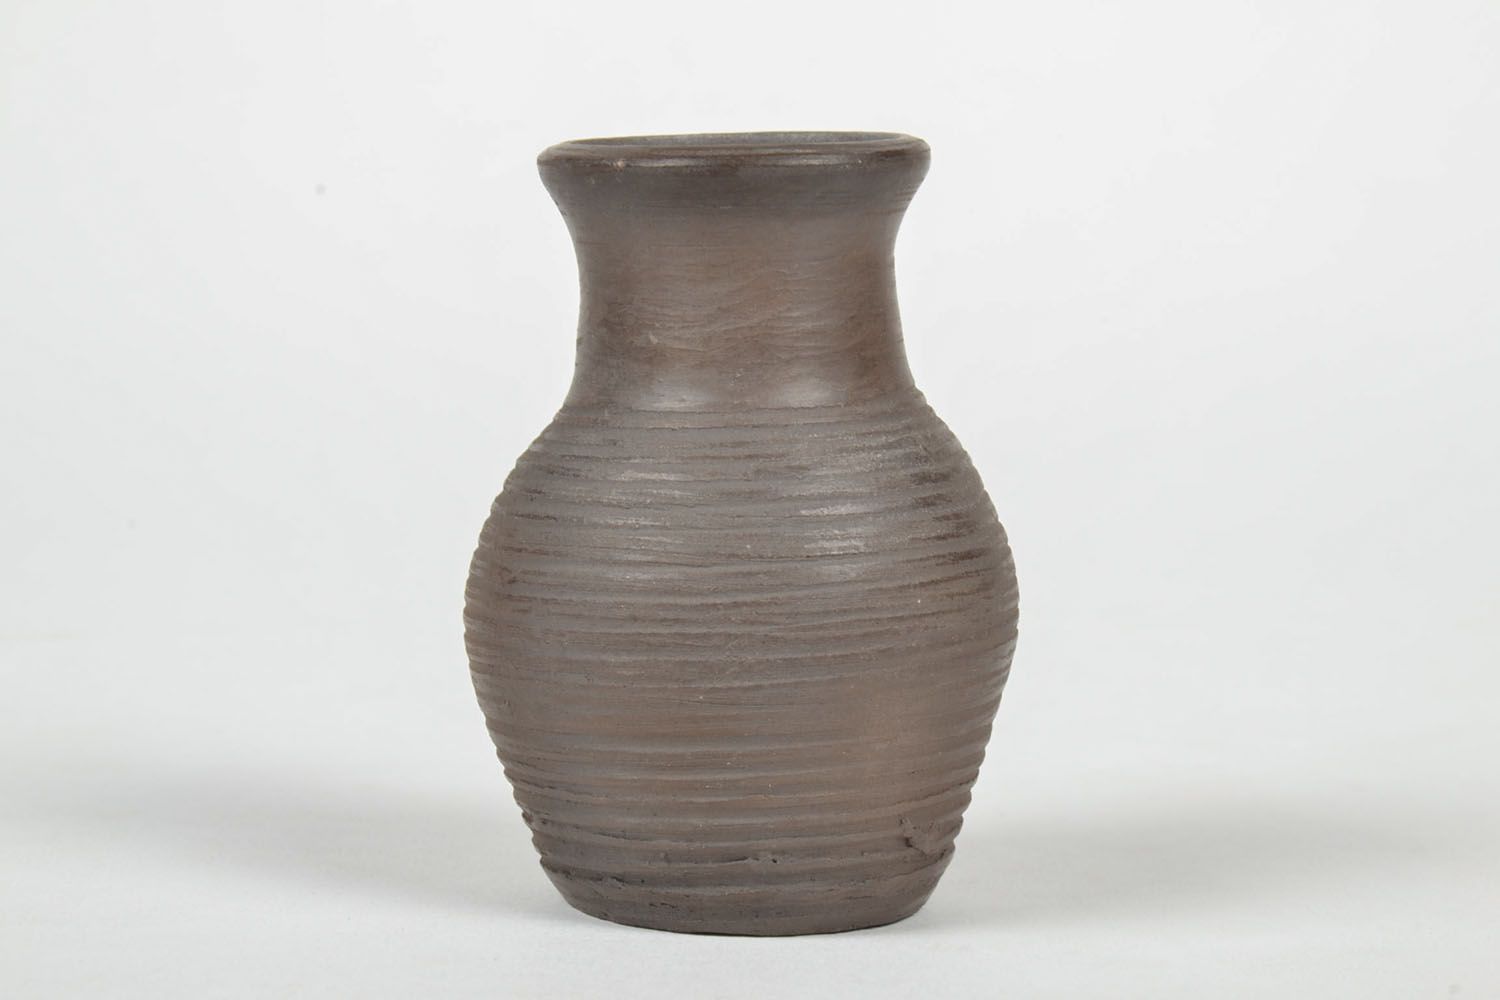 3 inches ceramic pitcher shape vase for shelf décor 0,21 lb photo 2